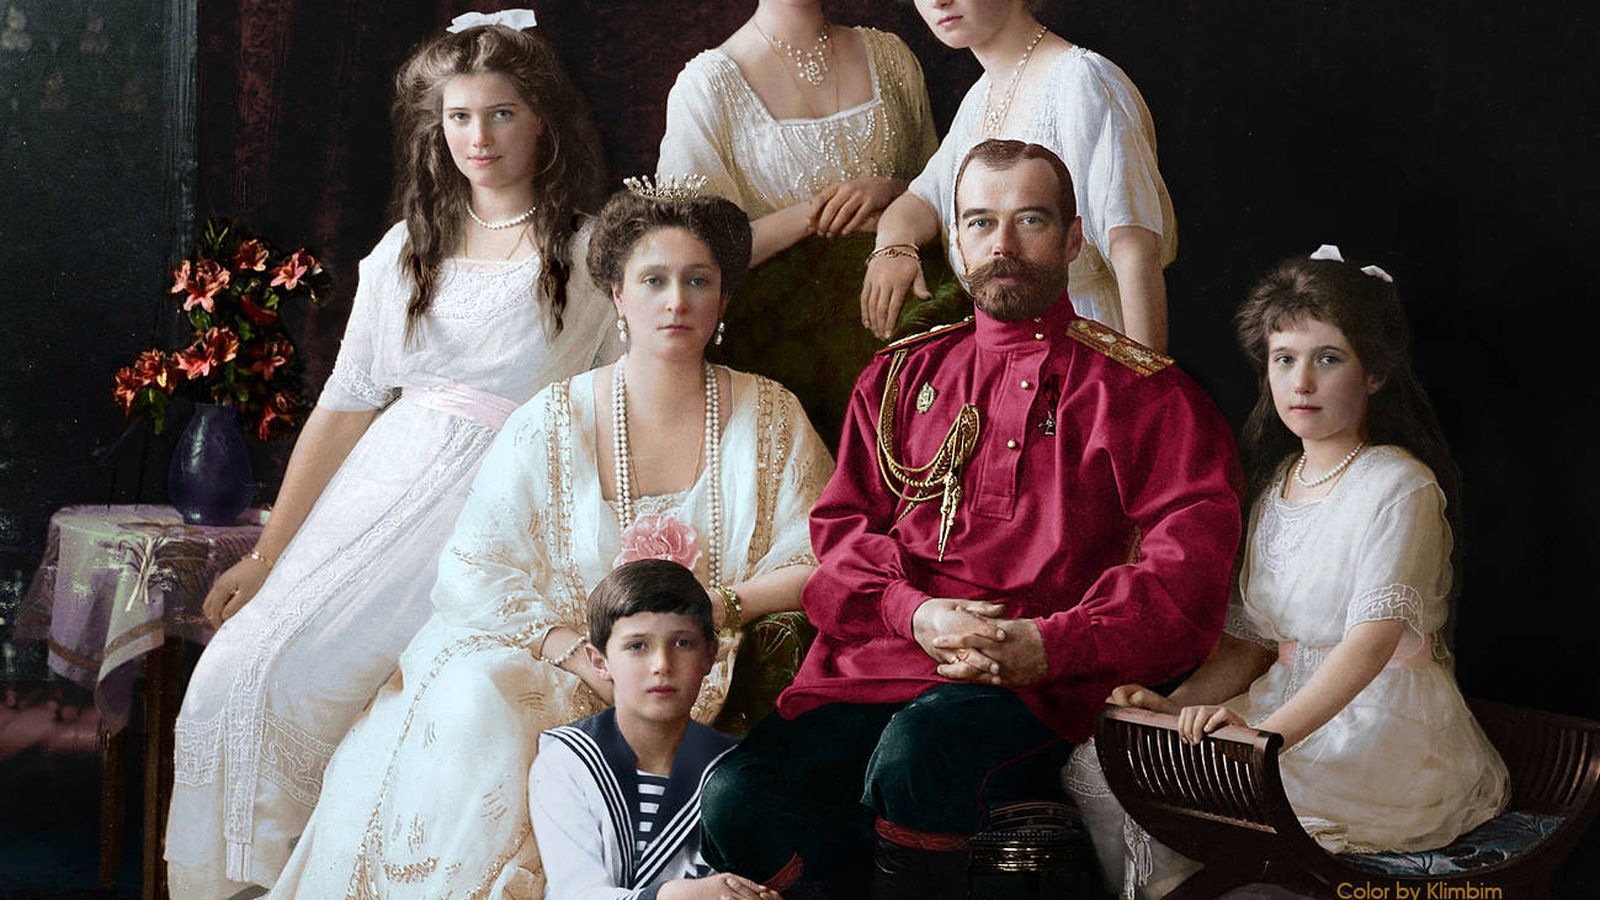 Foto: Imagen clásica del zar Nicolás II con su familia coloreada por la artista Olga Shirnina